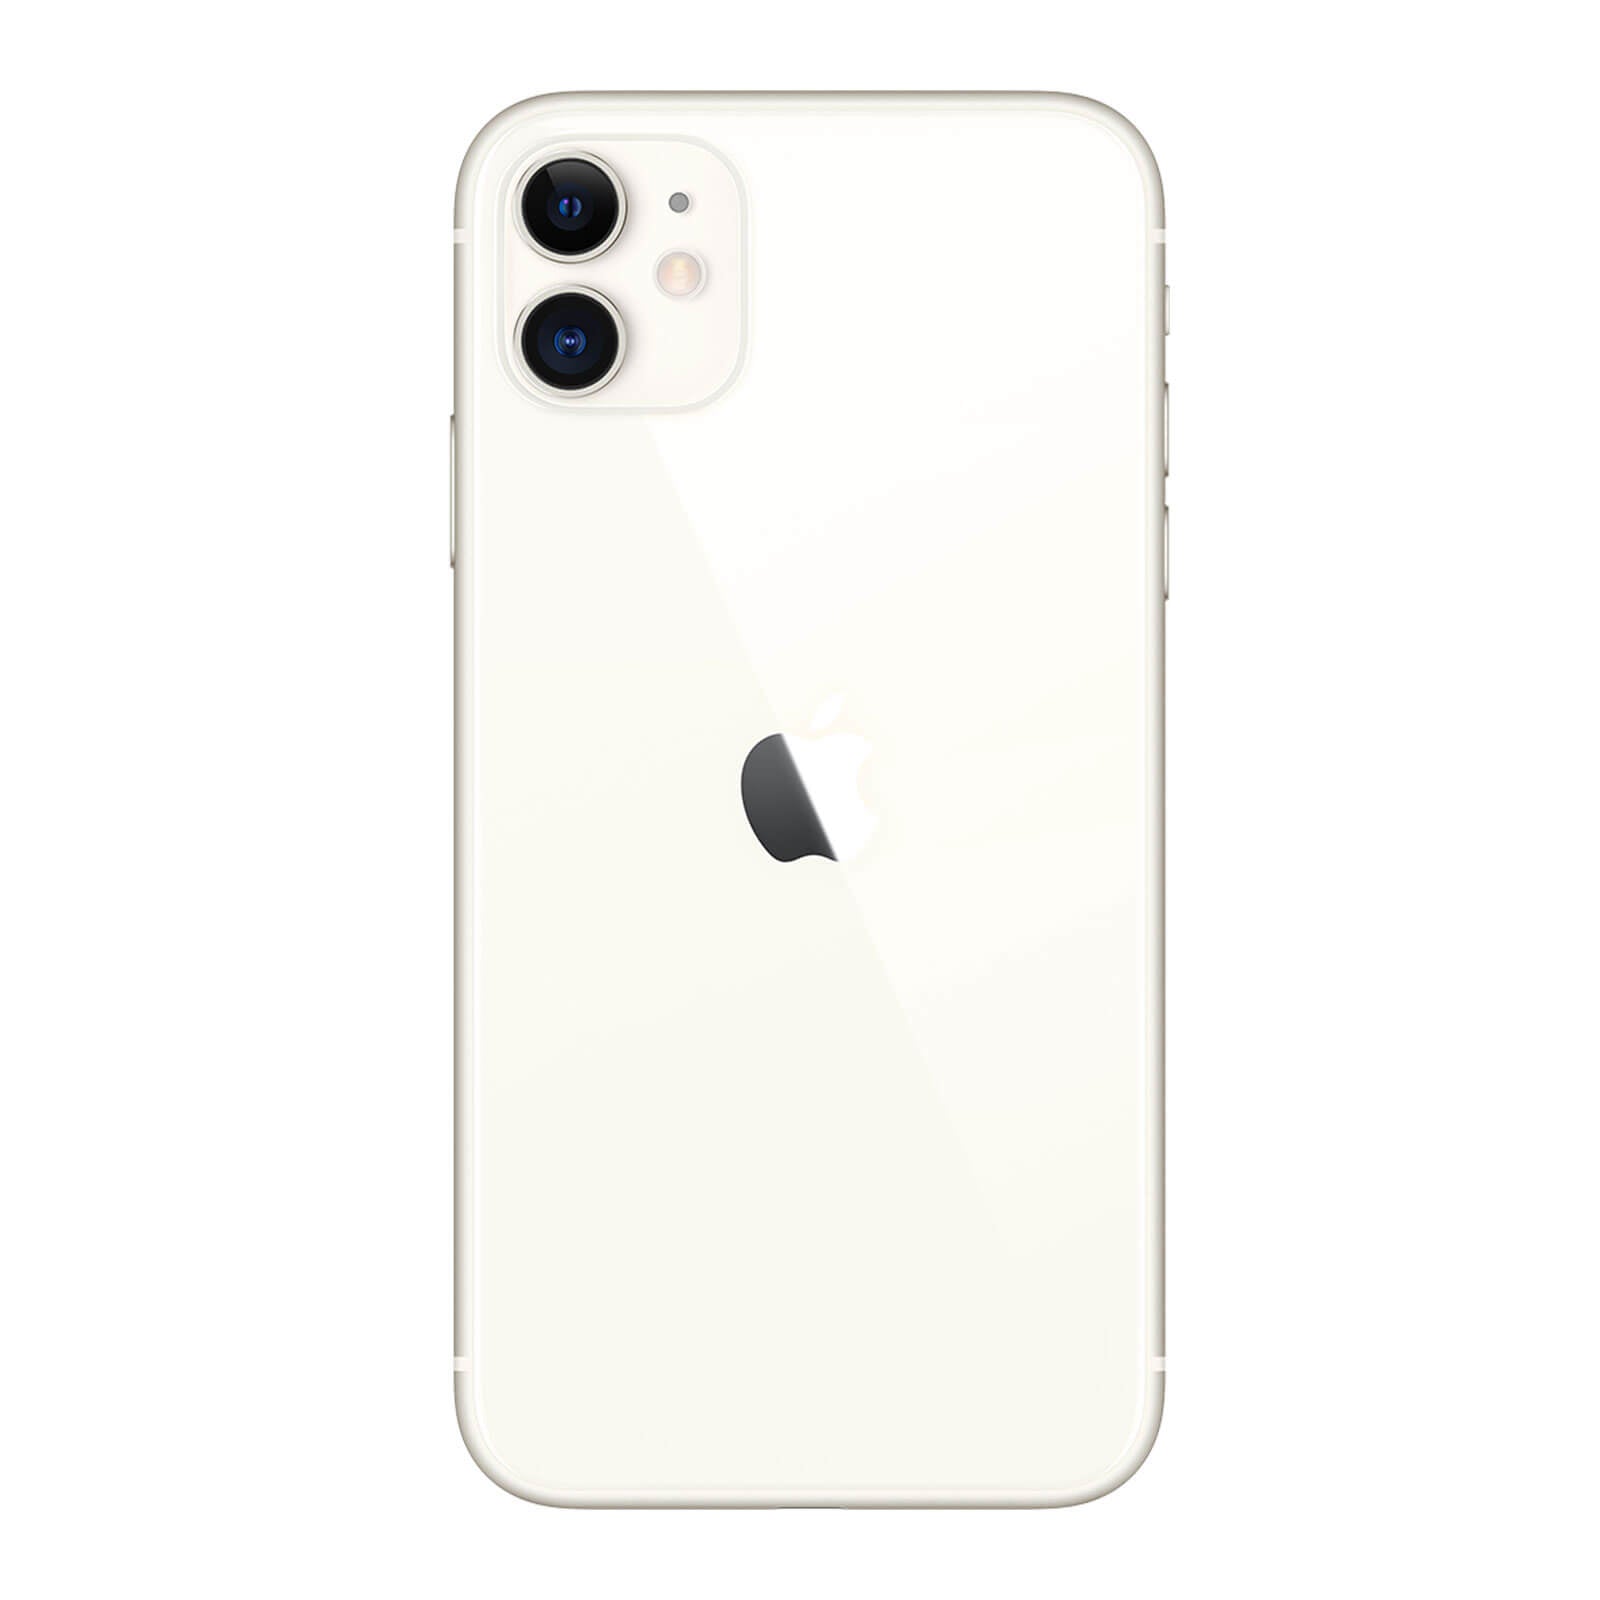 Apple iPhone 11 64GB White Fair - Sprint